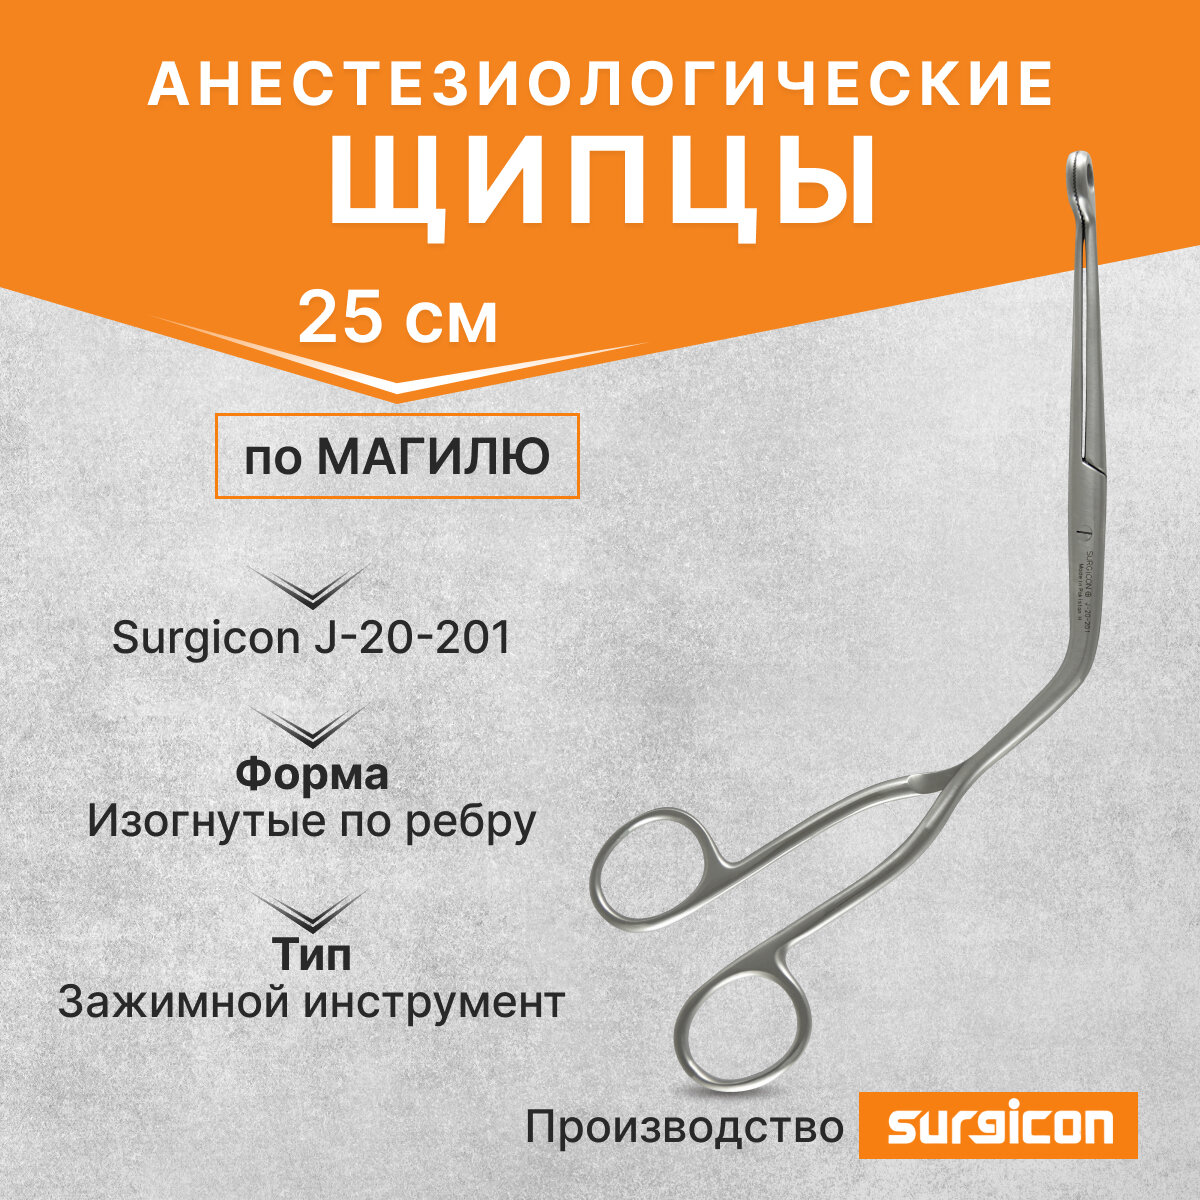 Щипцы анестезиологические по Магилю 250 мм Surgicon J-20-201